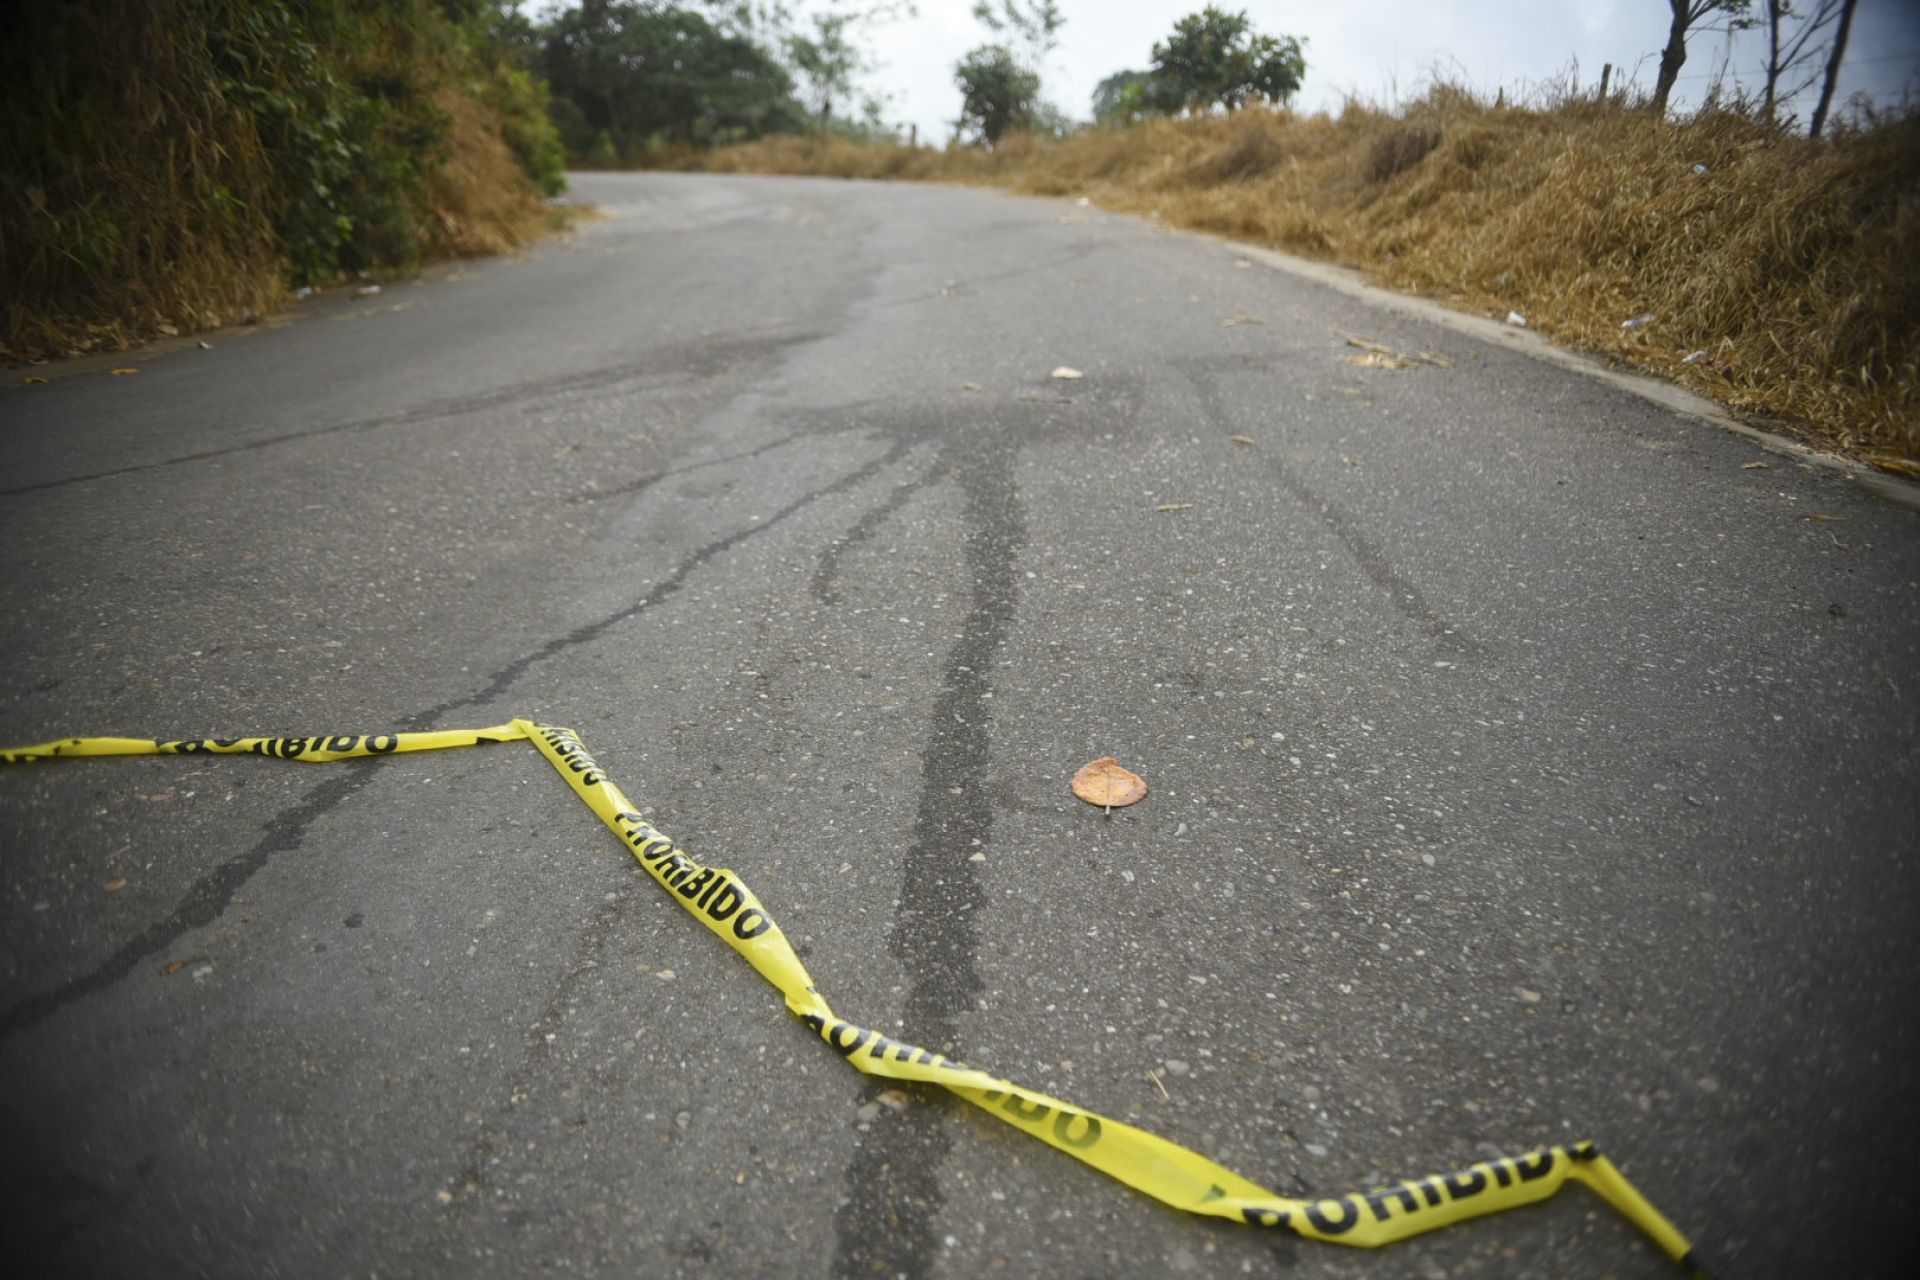 JESÚS CARRANZA, VERACRUZ, 06 DÉCEMBRE 2016.- Hier, il y a eu un affrontement entre l'armée et des hommes armés dans lequel un total de 20 civils ont été tués et deux arrêtés.  Les événements se sont produits sur l'autoroute menant à la municipalité de Suchilapan, près de la frontière territoriale entre Veracruz et Oaxaca.  Des camions militaires ont patrouillé dans la région aujourd'hui.  PHOTO : ÁNGEL HERNÁNDEZ / CUARTOSCURO.COM